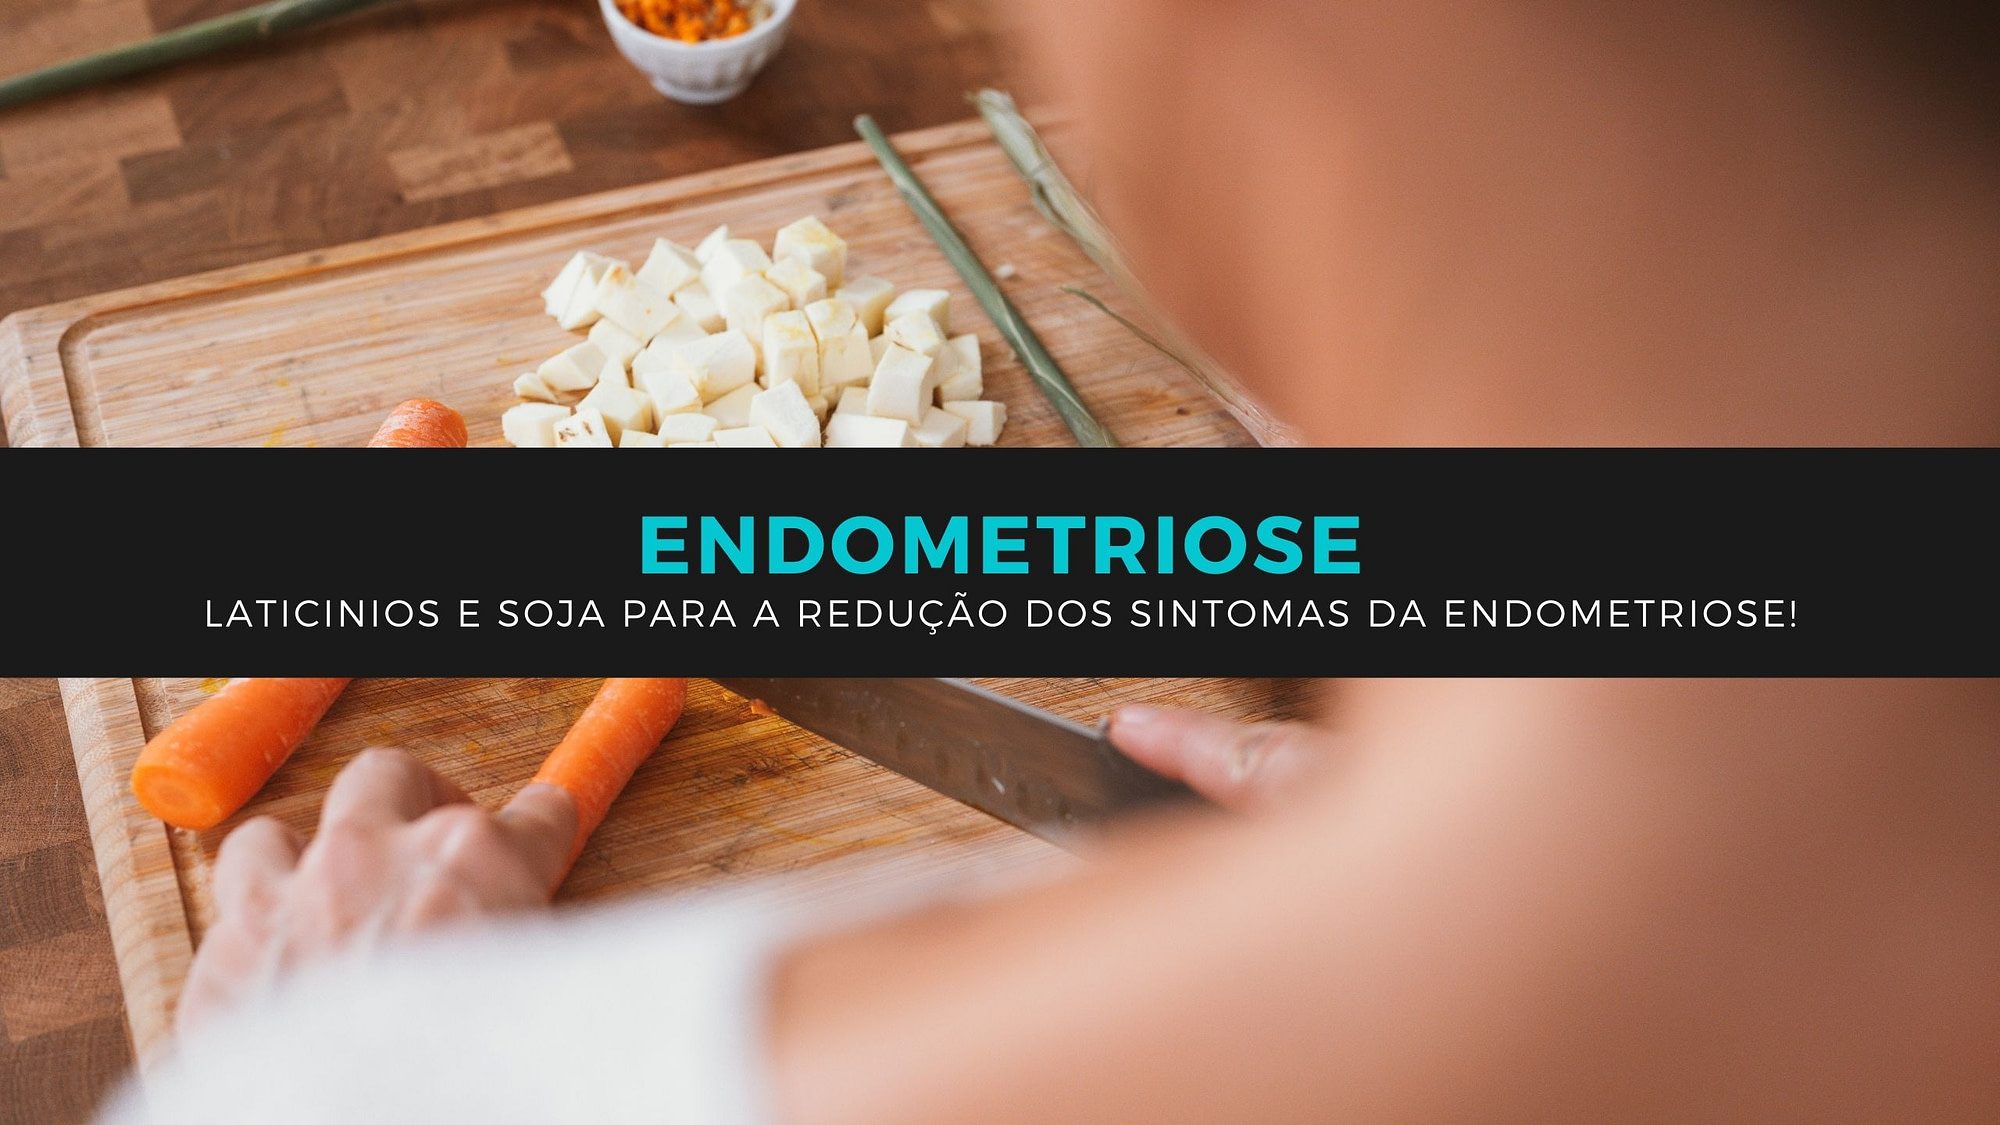 Laticinios e soja para a redução dos sintomas da endometriose!